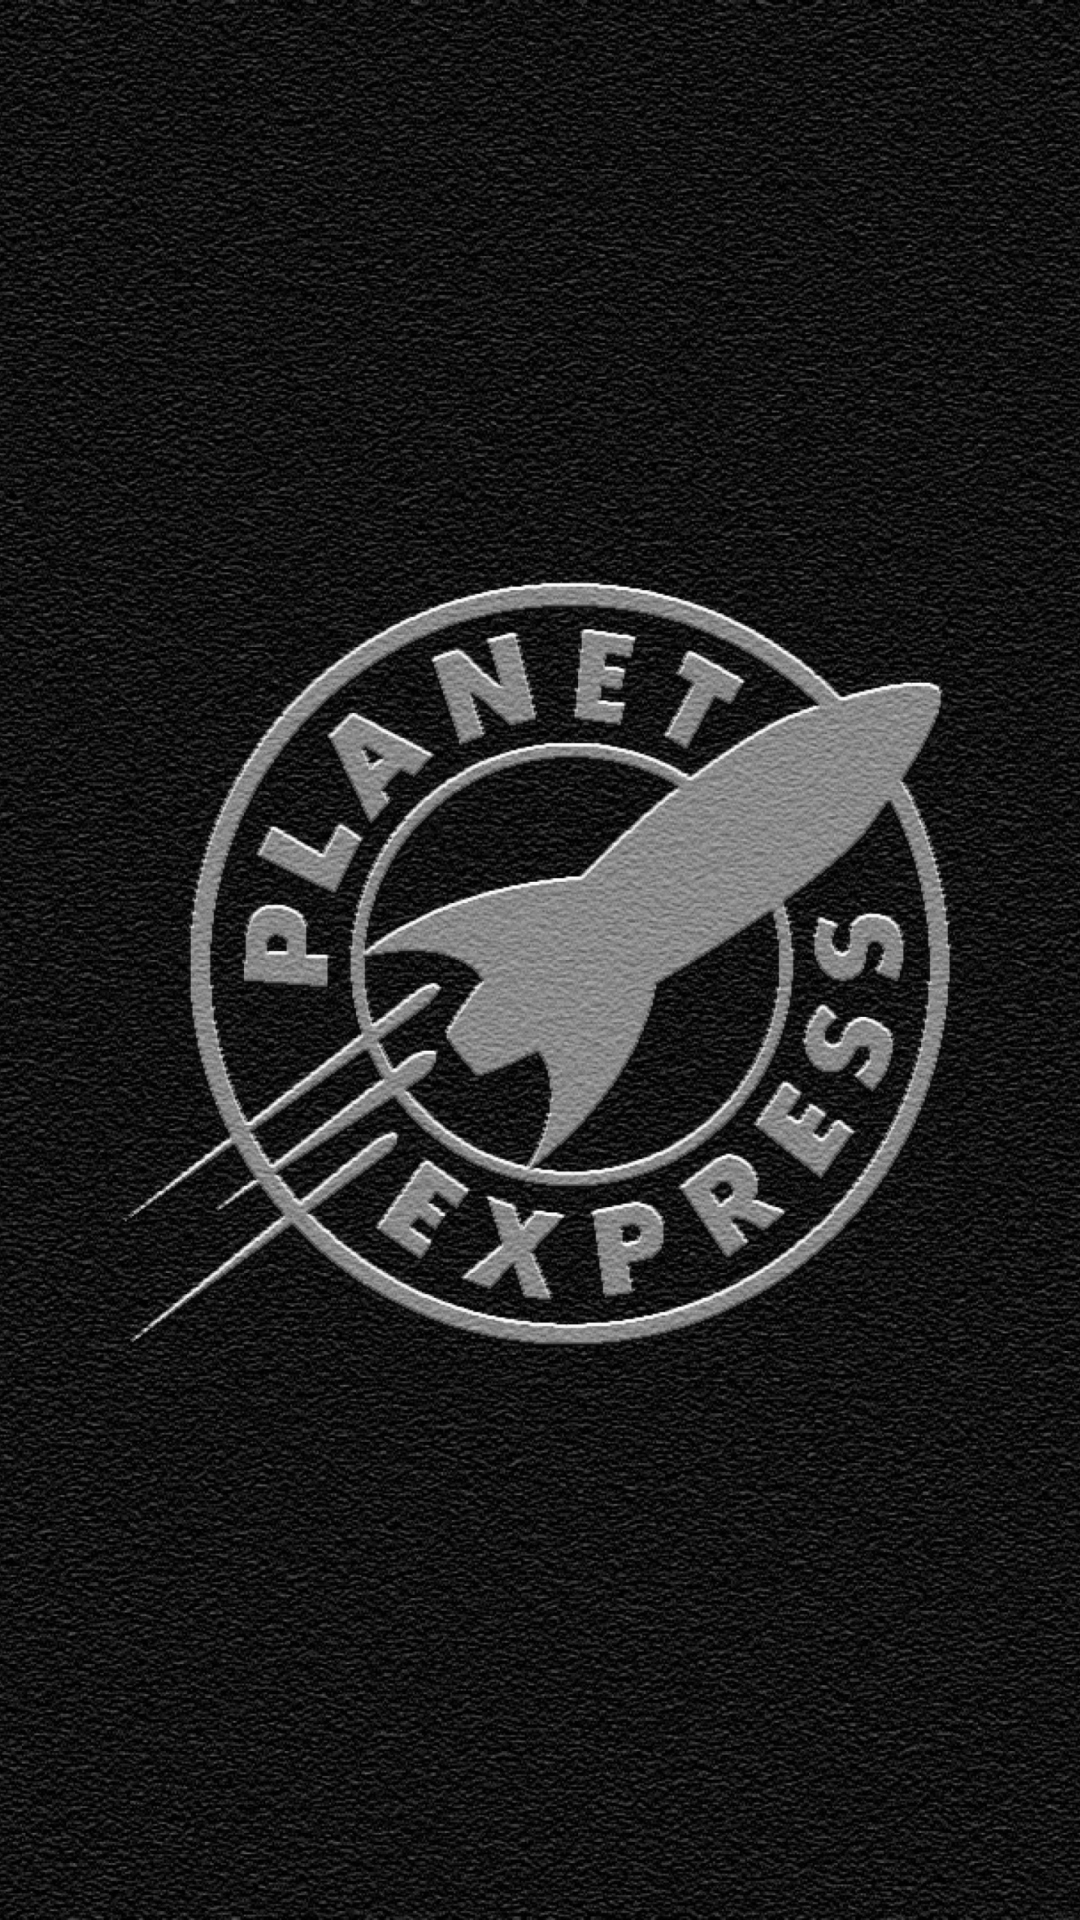 Sfondi Planet Express 1080x1920